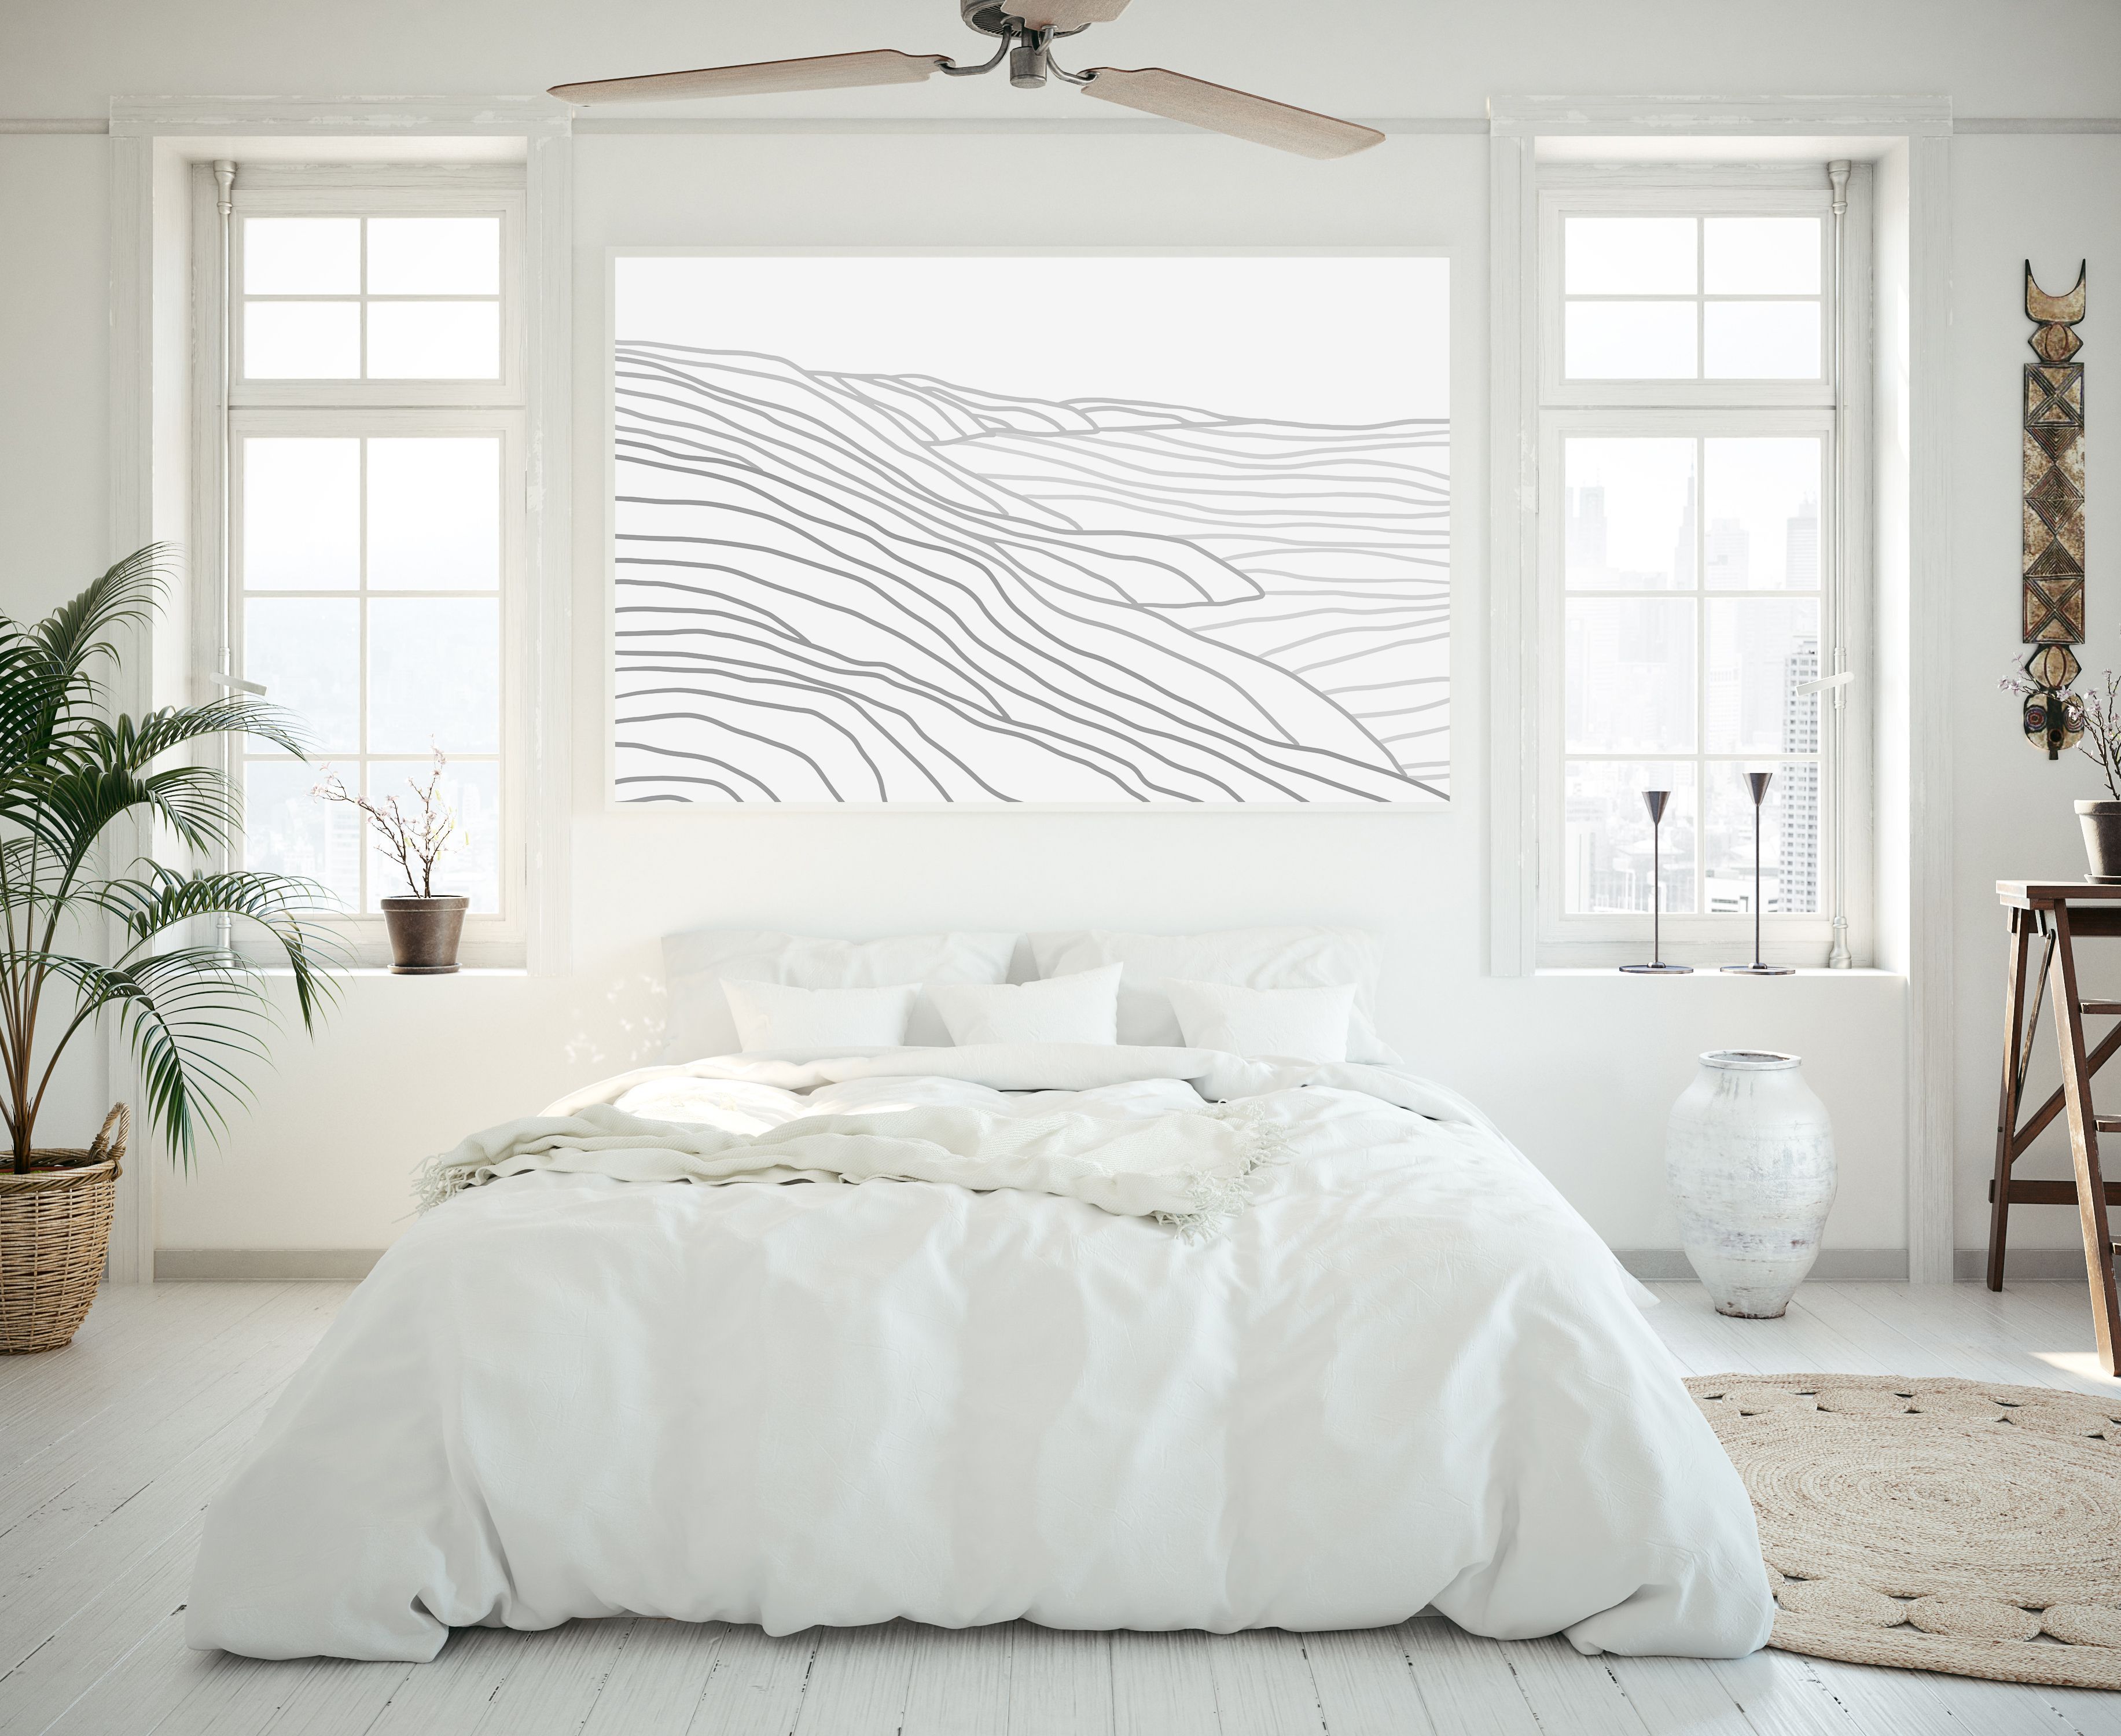 Gray Line Coastline Modern Minimalist Coastal Wall Art Print or Canvas -   19 room decor bedroom modern ideas